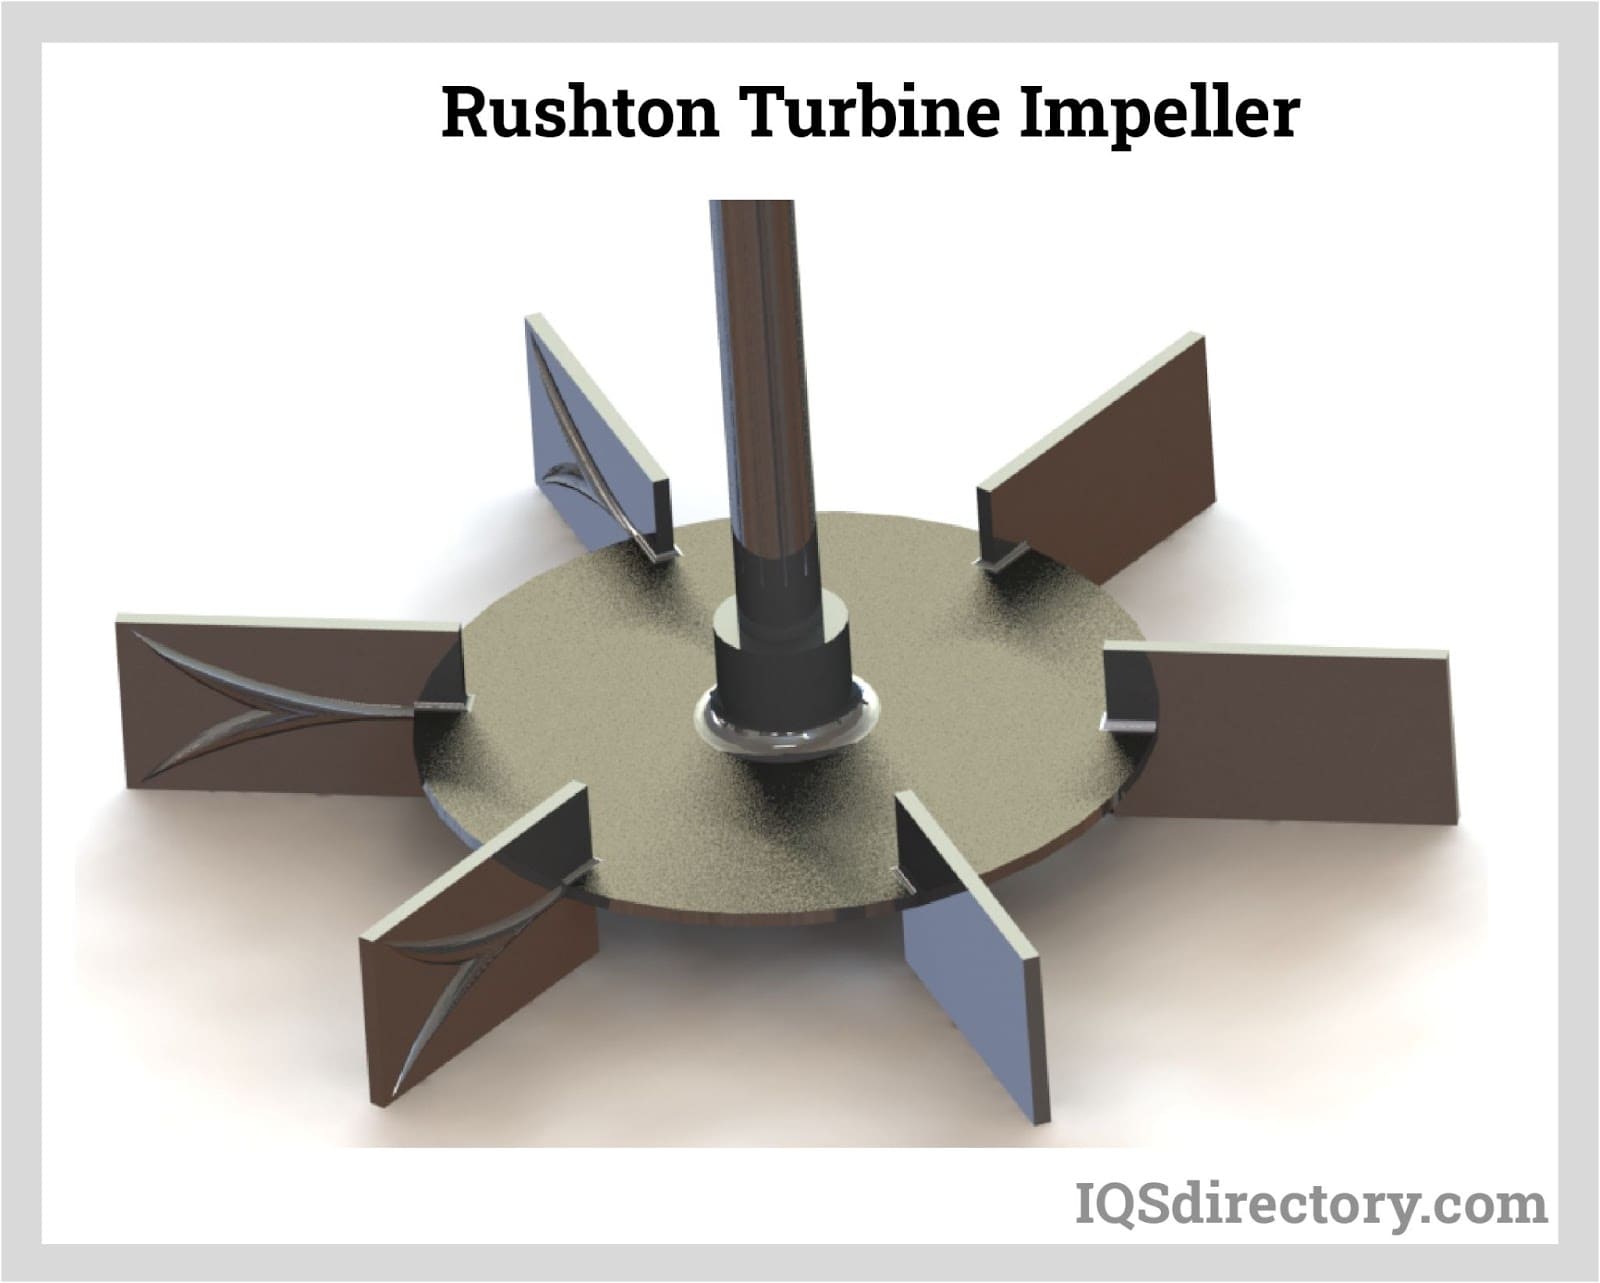 Rushton Turbine Impeller